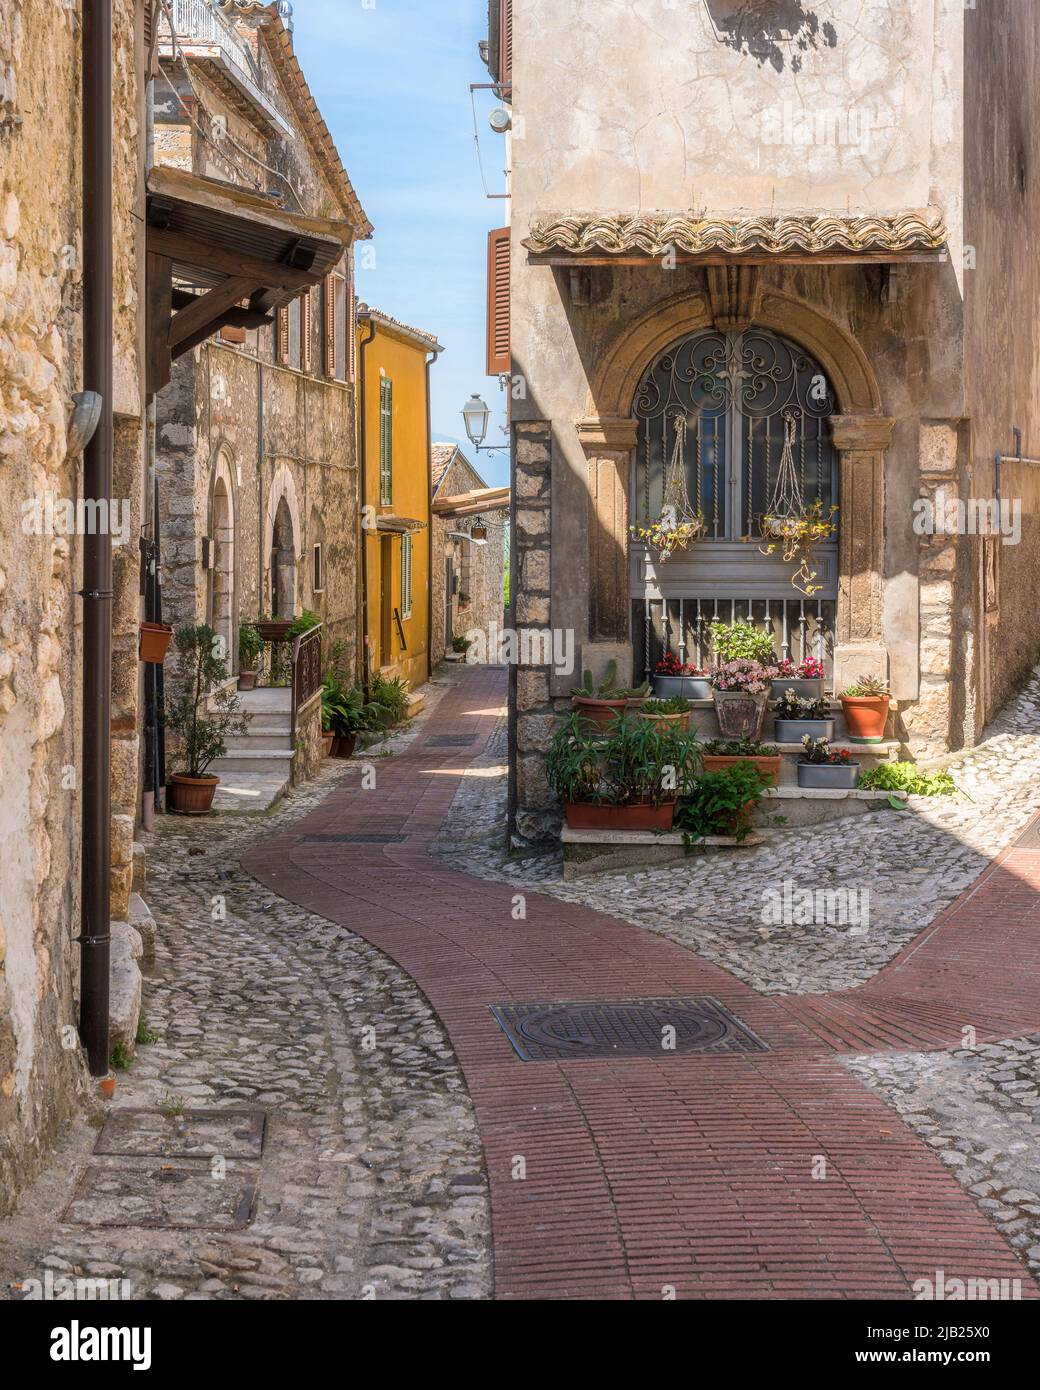 Il bellissimo borgo di Veroli, nei pressi di Frosinone, Lazio, Italia centrale. Foto Stock